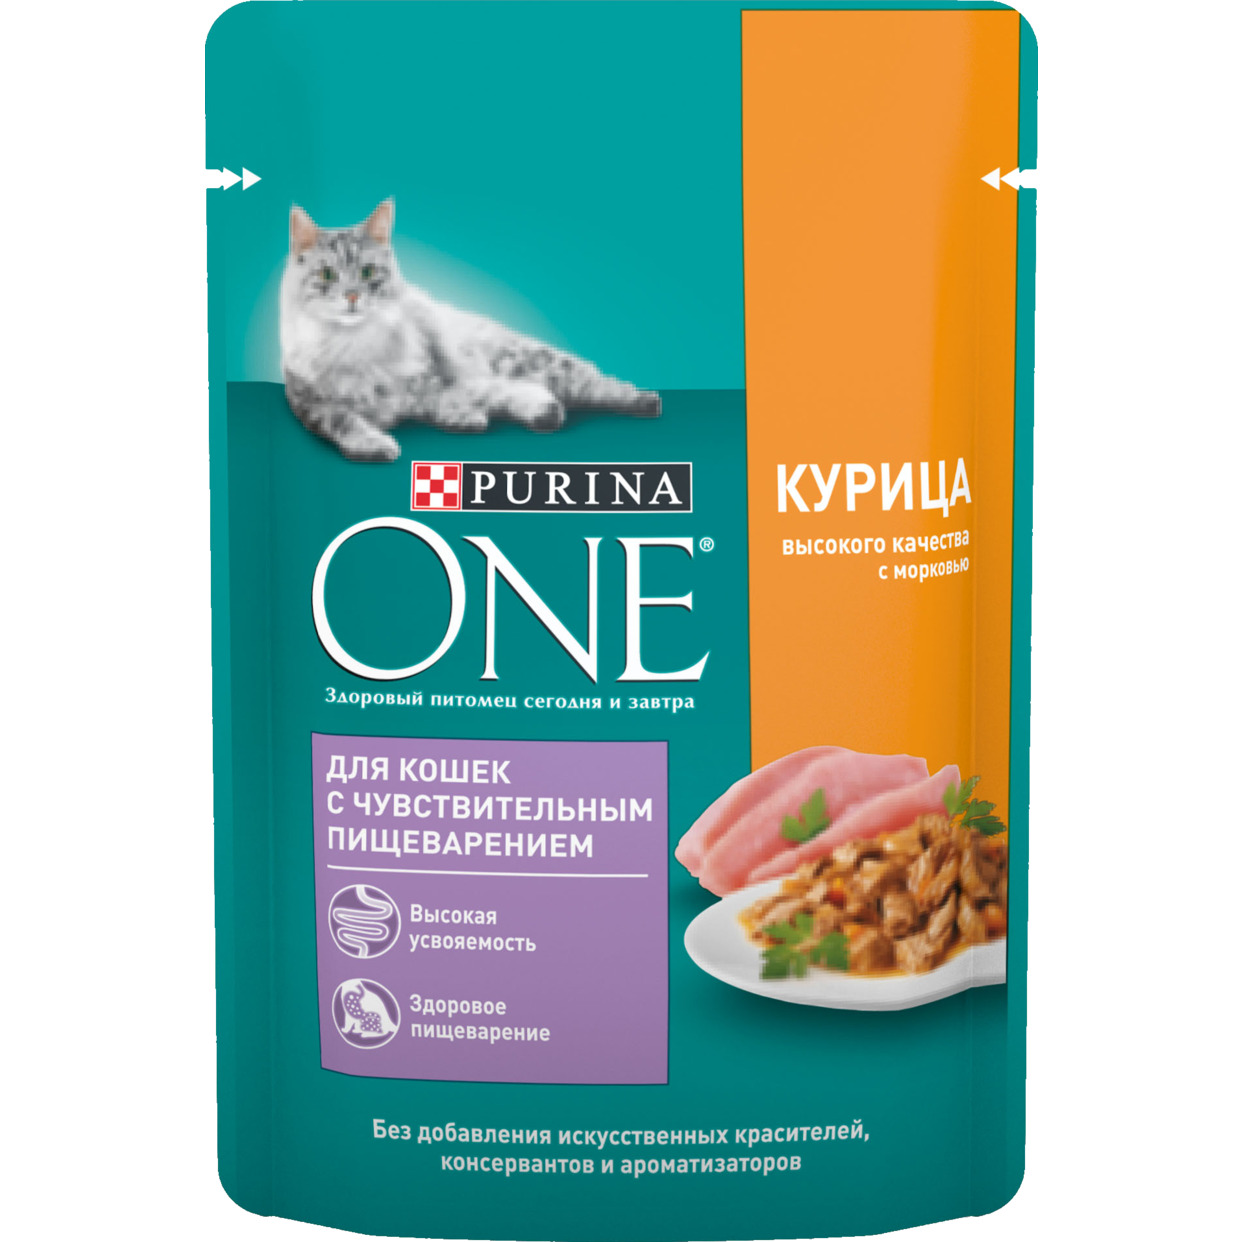 PURINA ONE® (ПУРИНА УАН) корм для кошек с чувствительным пищеварением, с курицей высокого качества и морковью, 75 гр